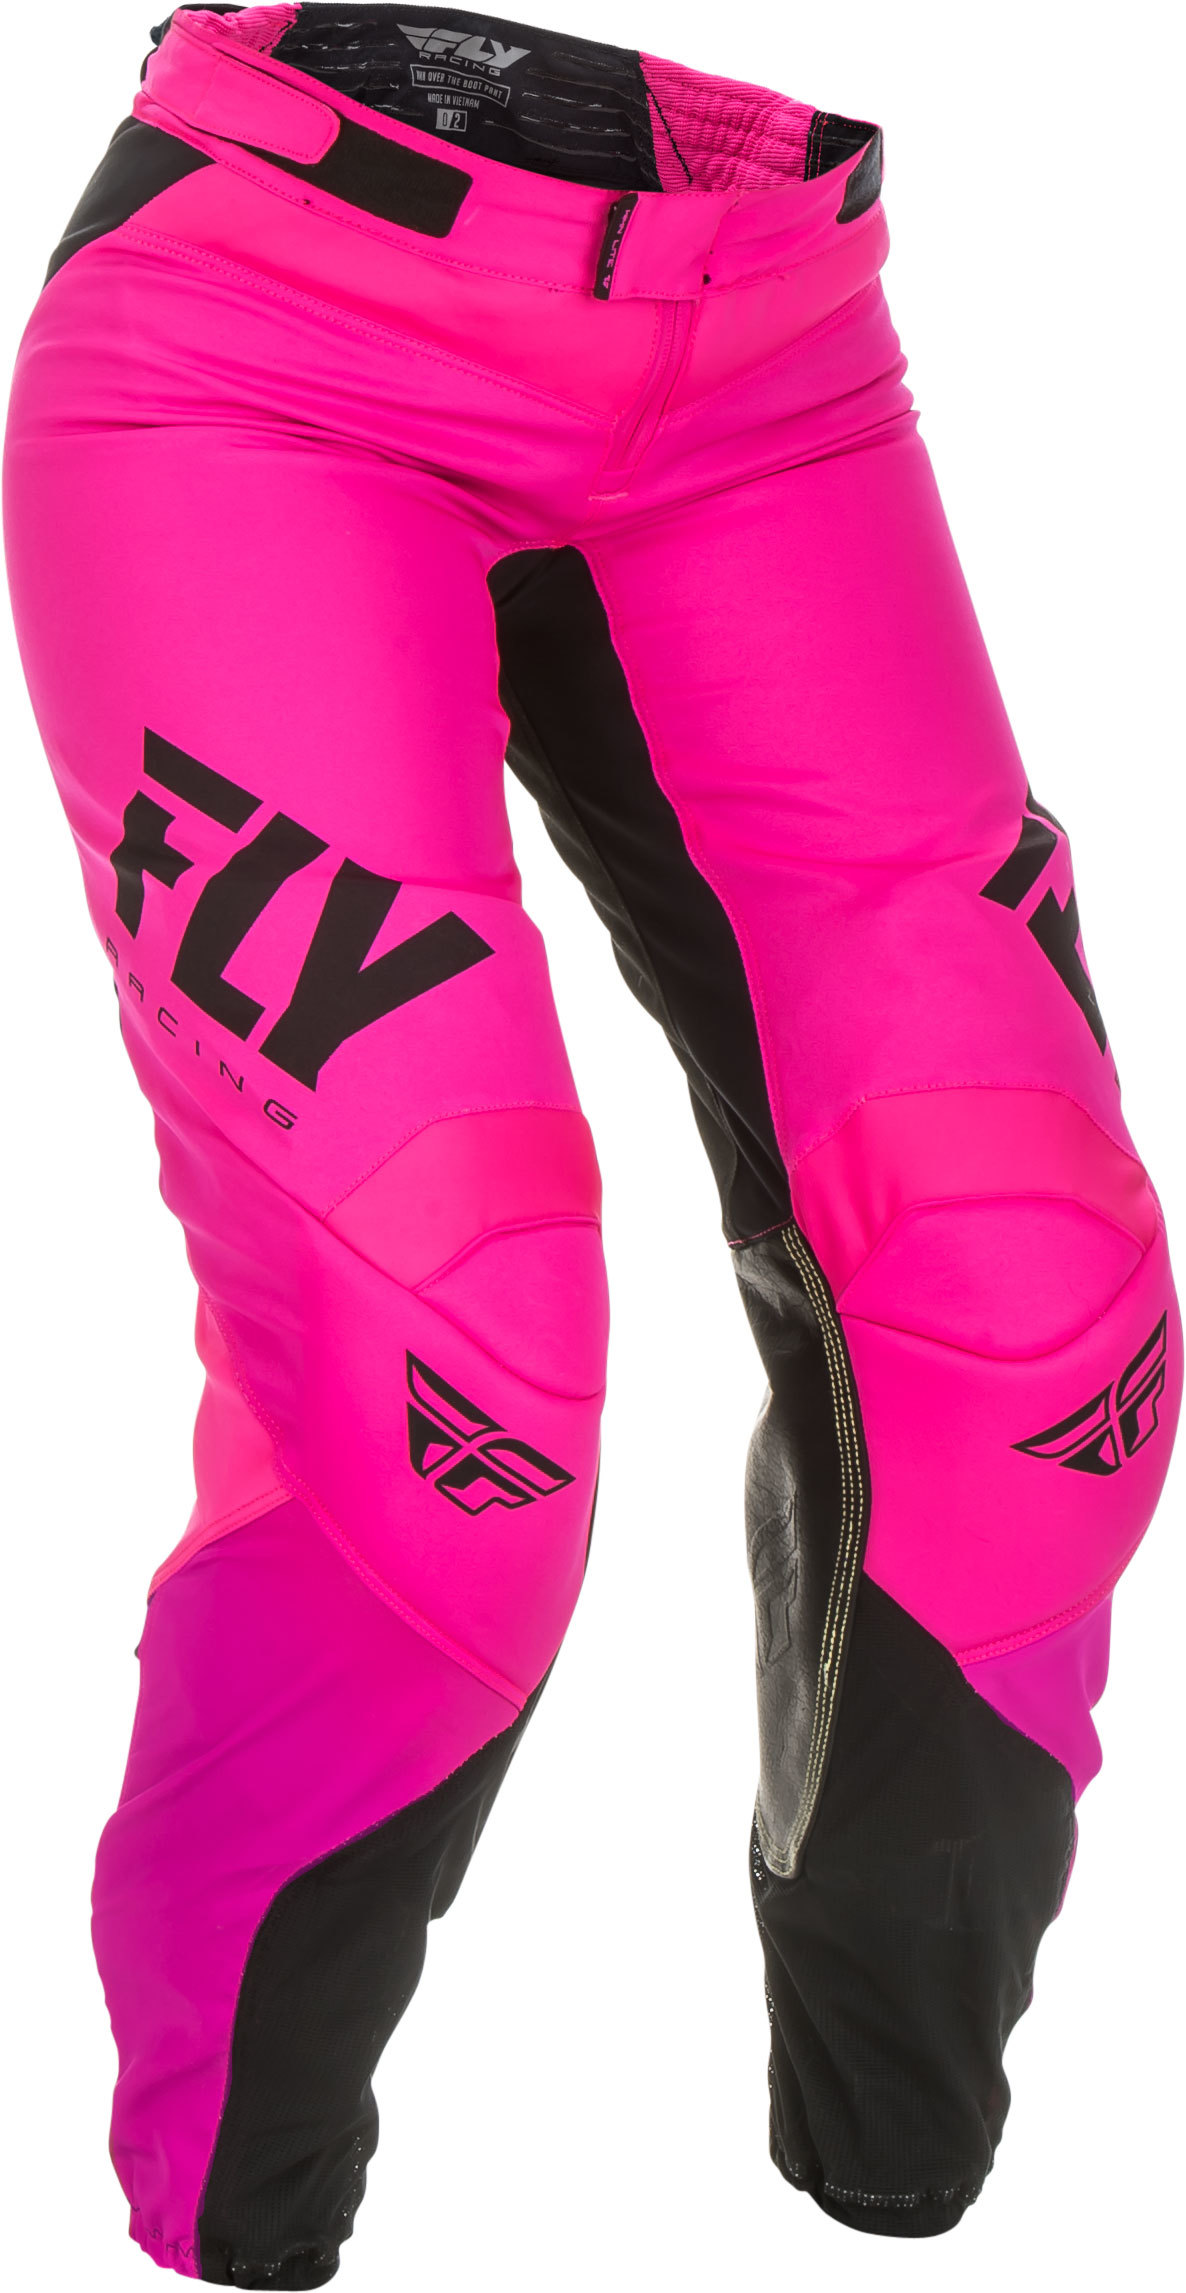 Fly Racing - Women's Lite Race Pants Neon Pink/black Sz 15/16 - 372-63809